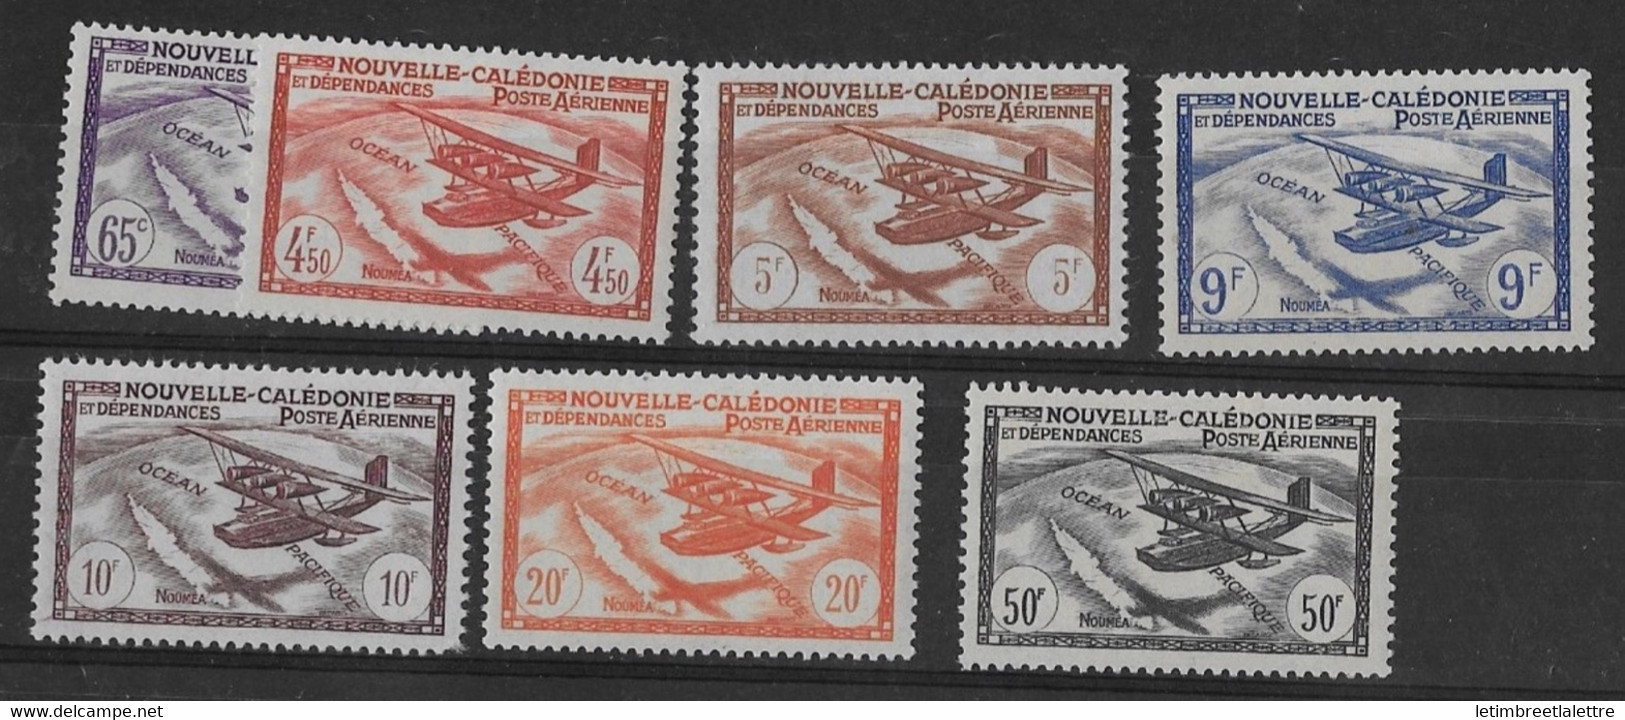 ⭐ Nouvelle Calédonie - Poste Aérienne - YT N° 39 à 45 ** - Neuf Sans Charnière - 1942 / 1943 ⭐ - Unused Stamps